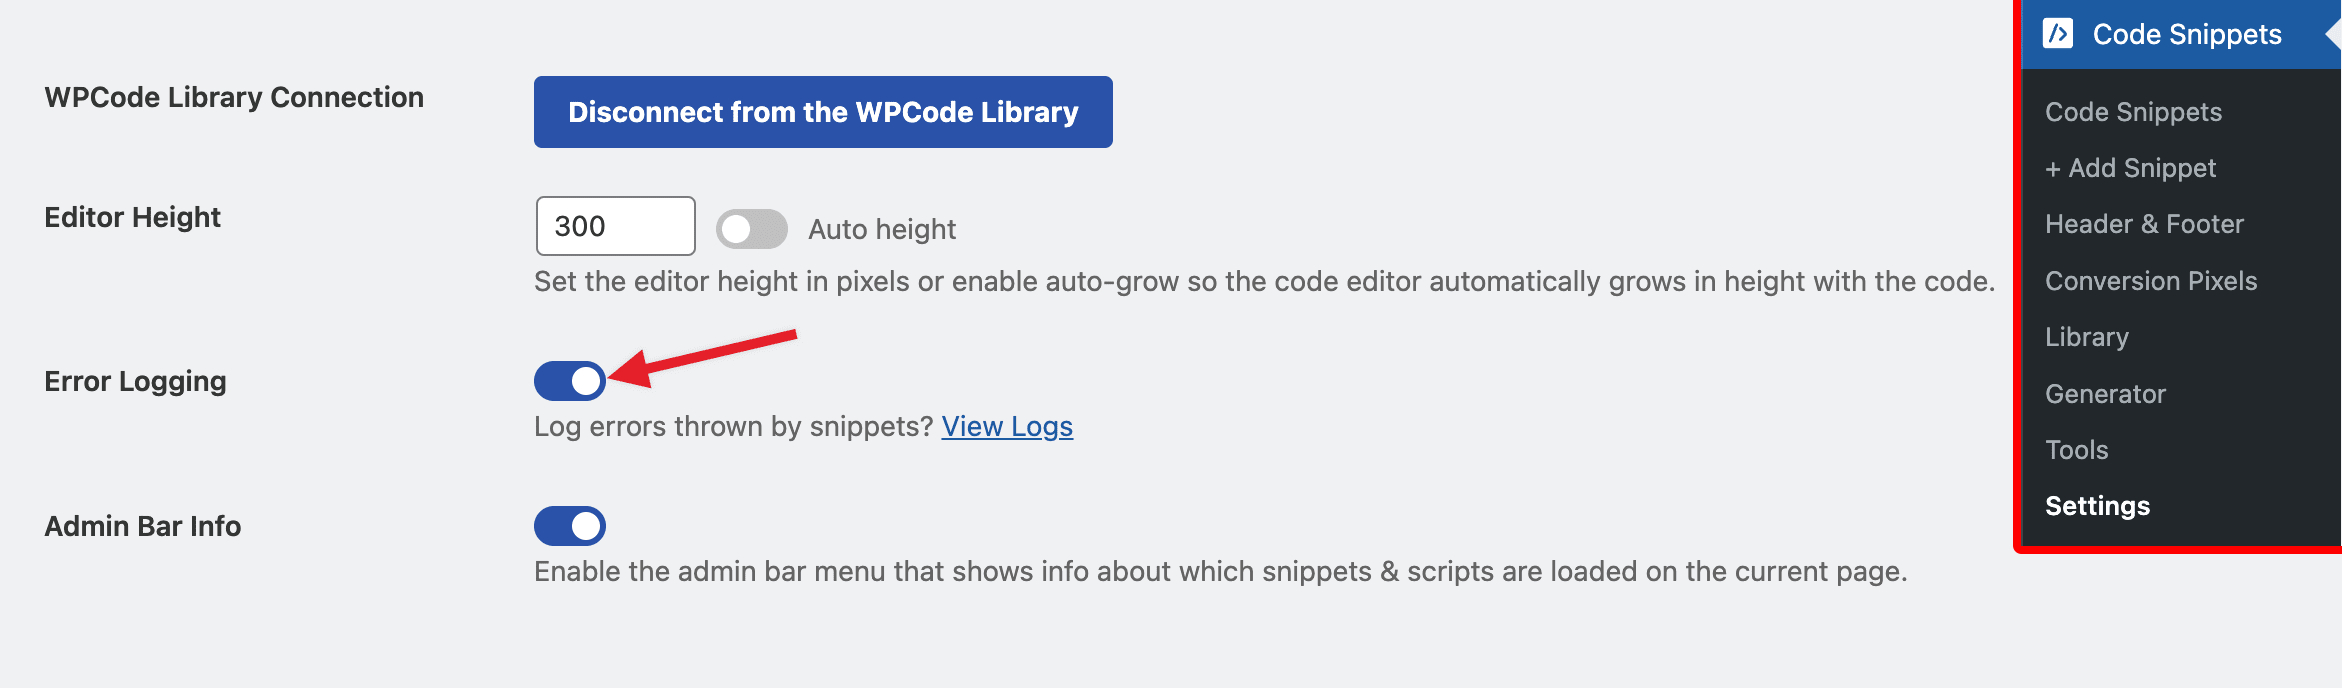 WPCode Settings enable error logging